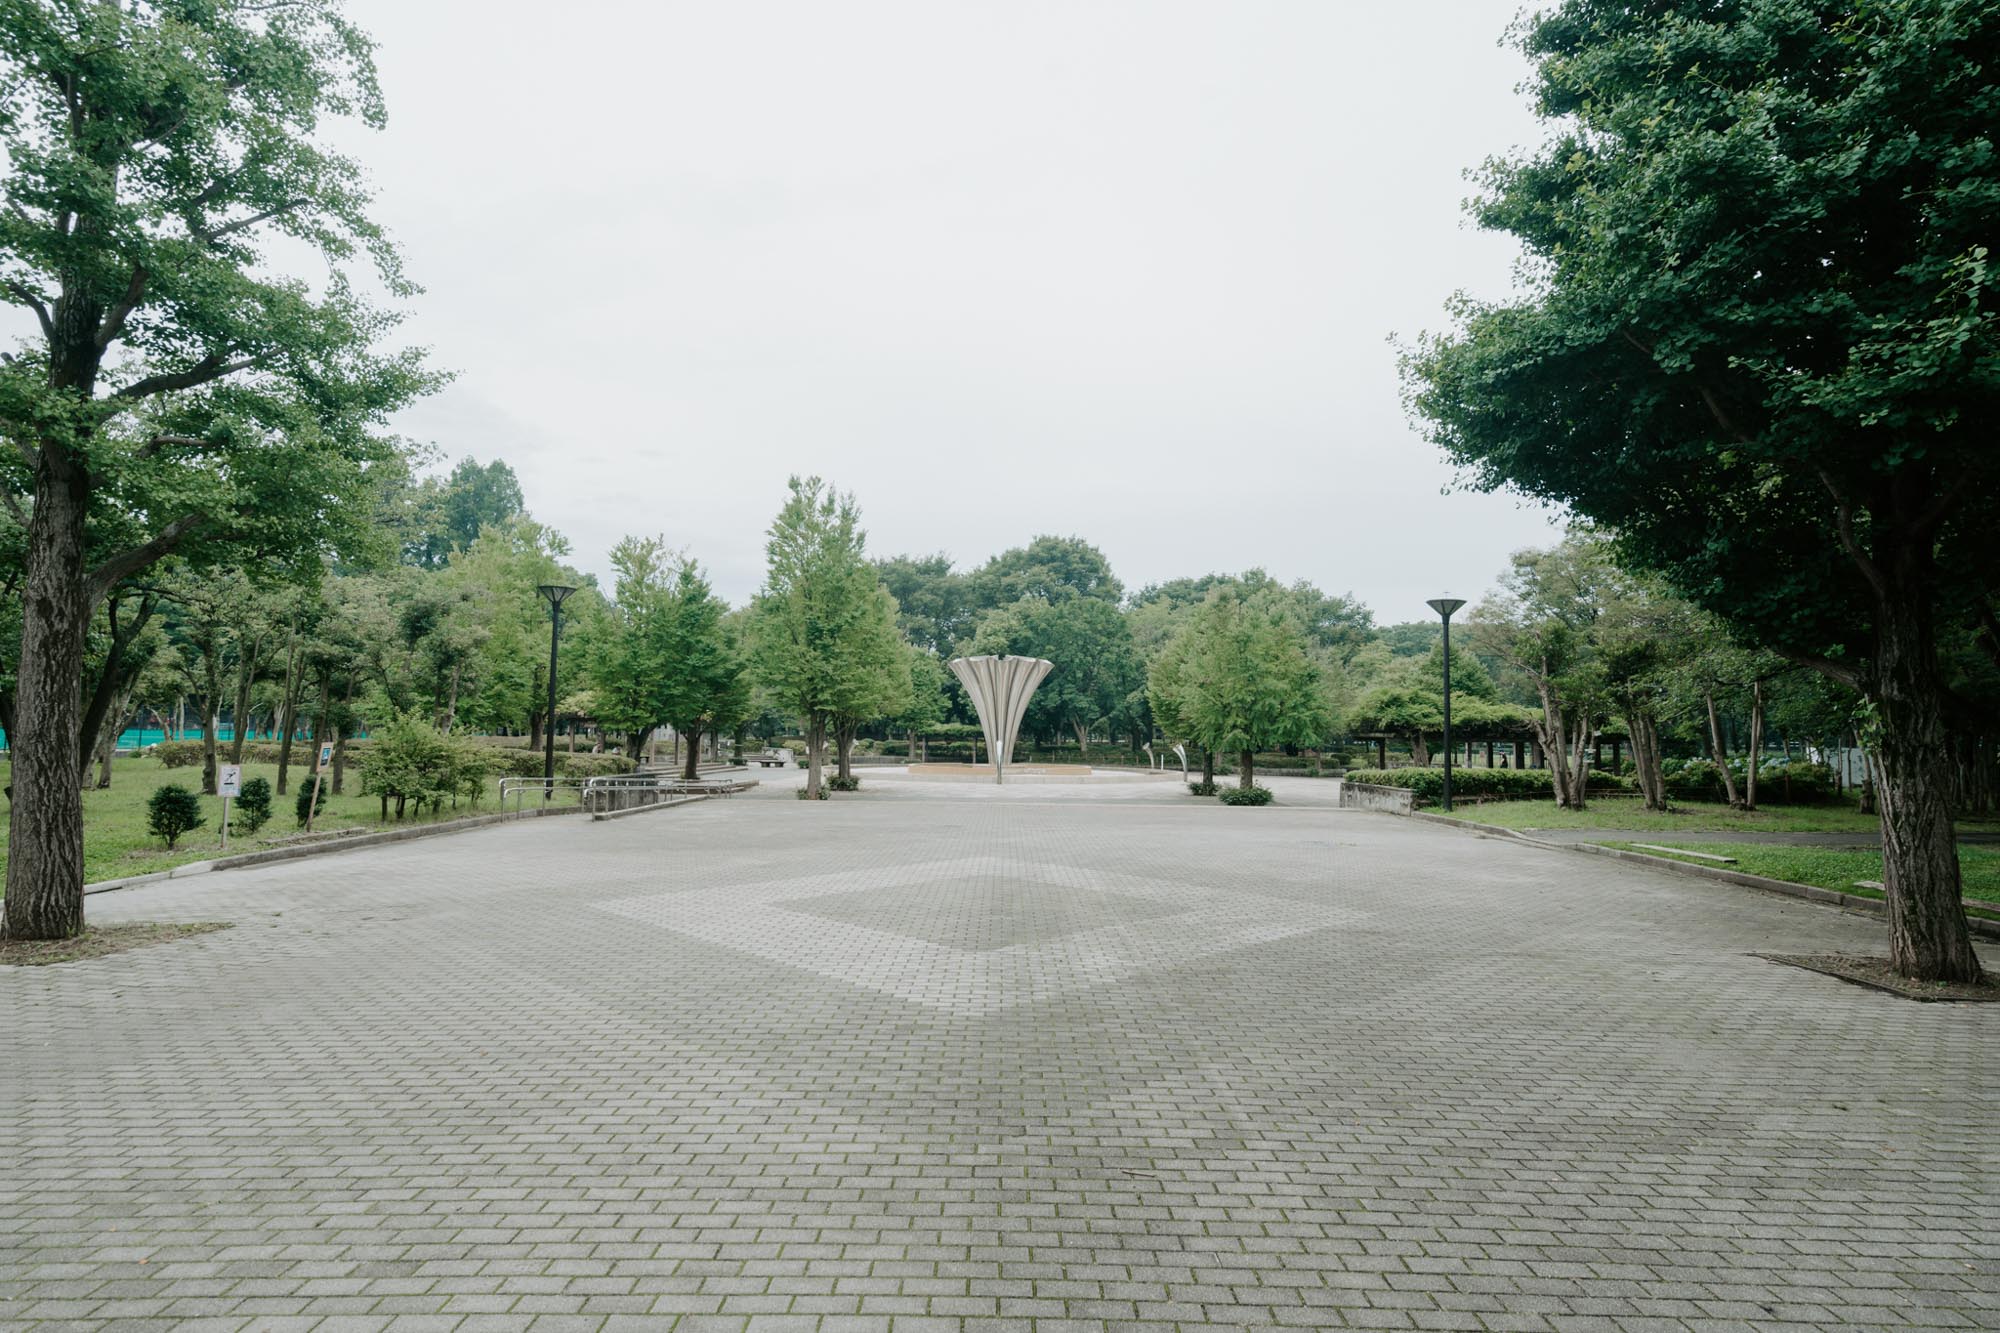 団地のすぐ隣にある「都立赤塚公園」は、野球場やテニスコート、バーベキュー場まで備える広大な公園です。